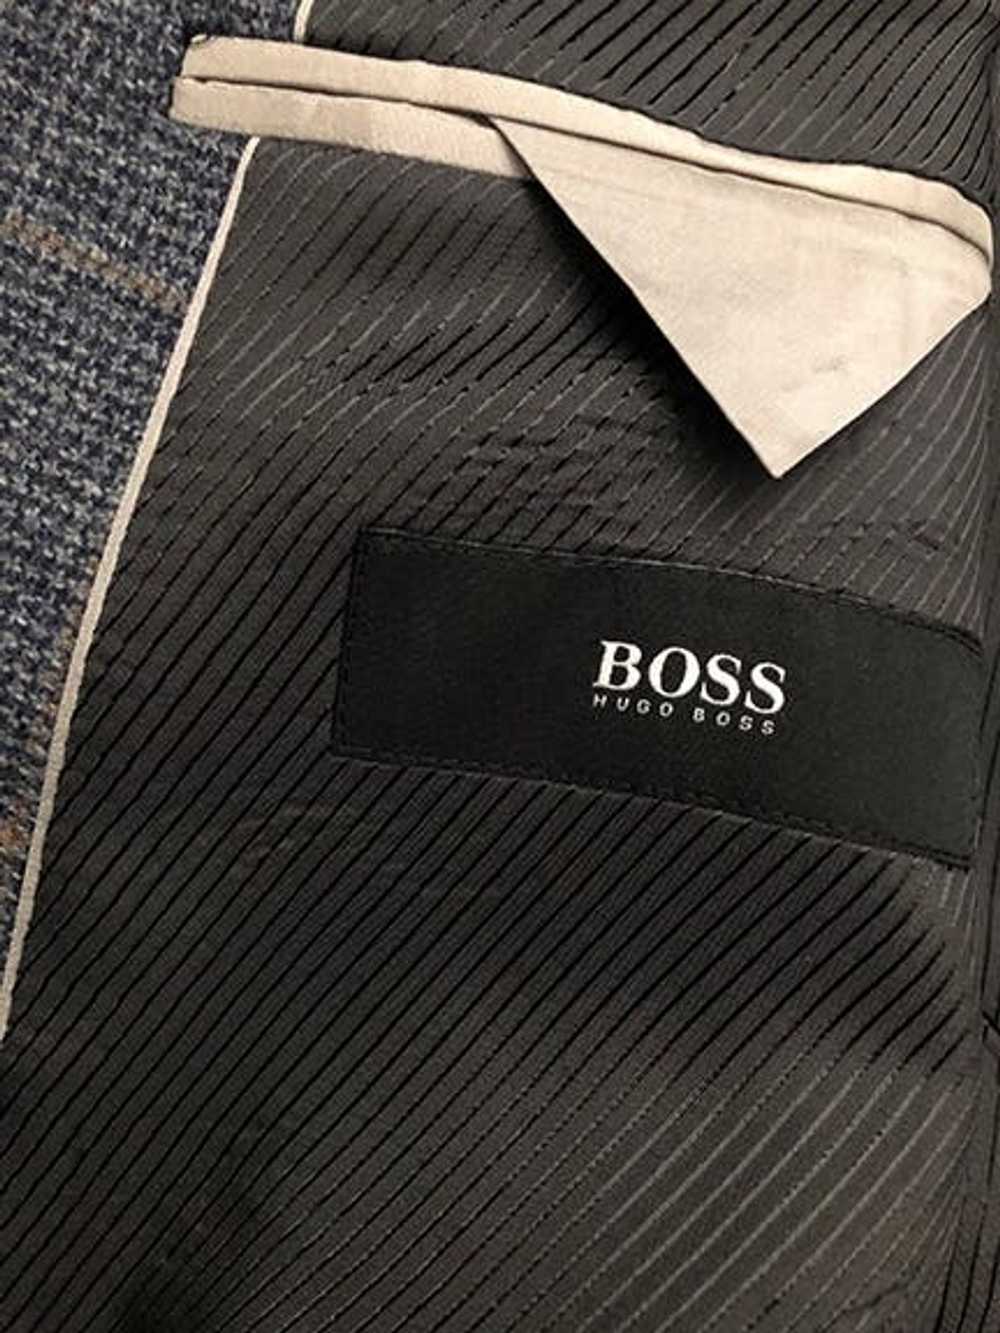 Hugo Boss HUGO BOSS Tweed Virgin Wool Plaid Sport… - image 3